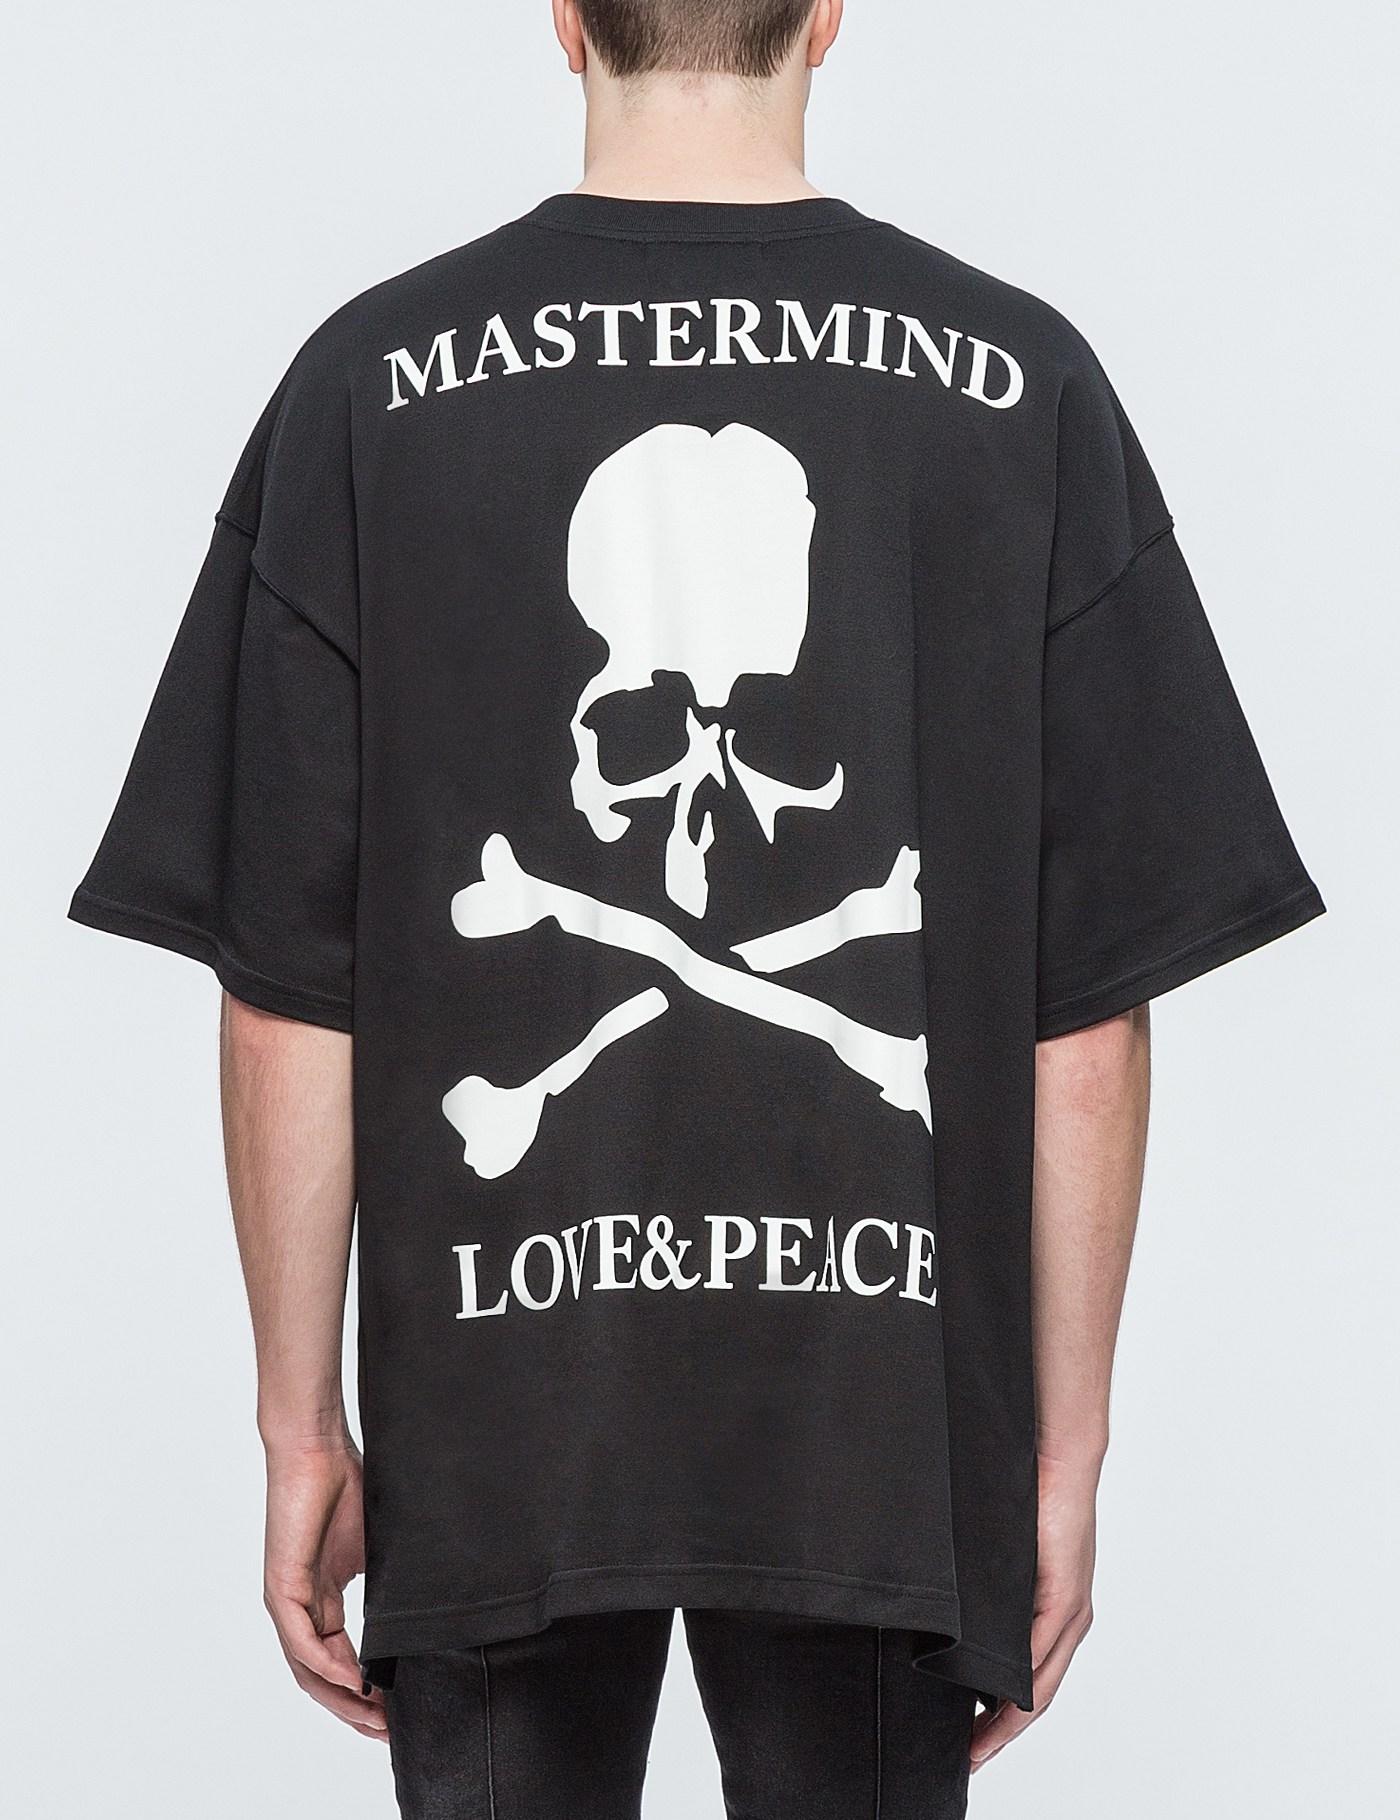 Mastermind Japan Denim "m" Oversized S/s T-shirt in Black for Men - Lyst